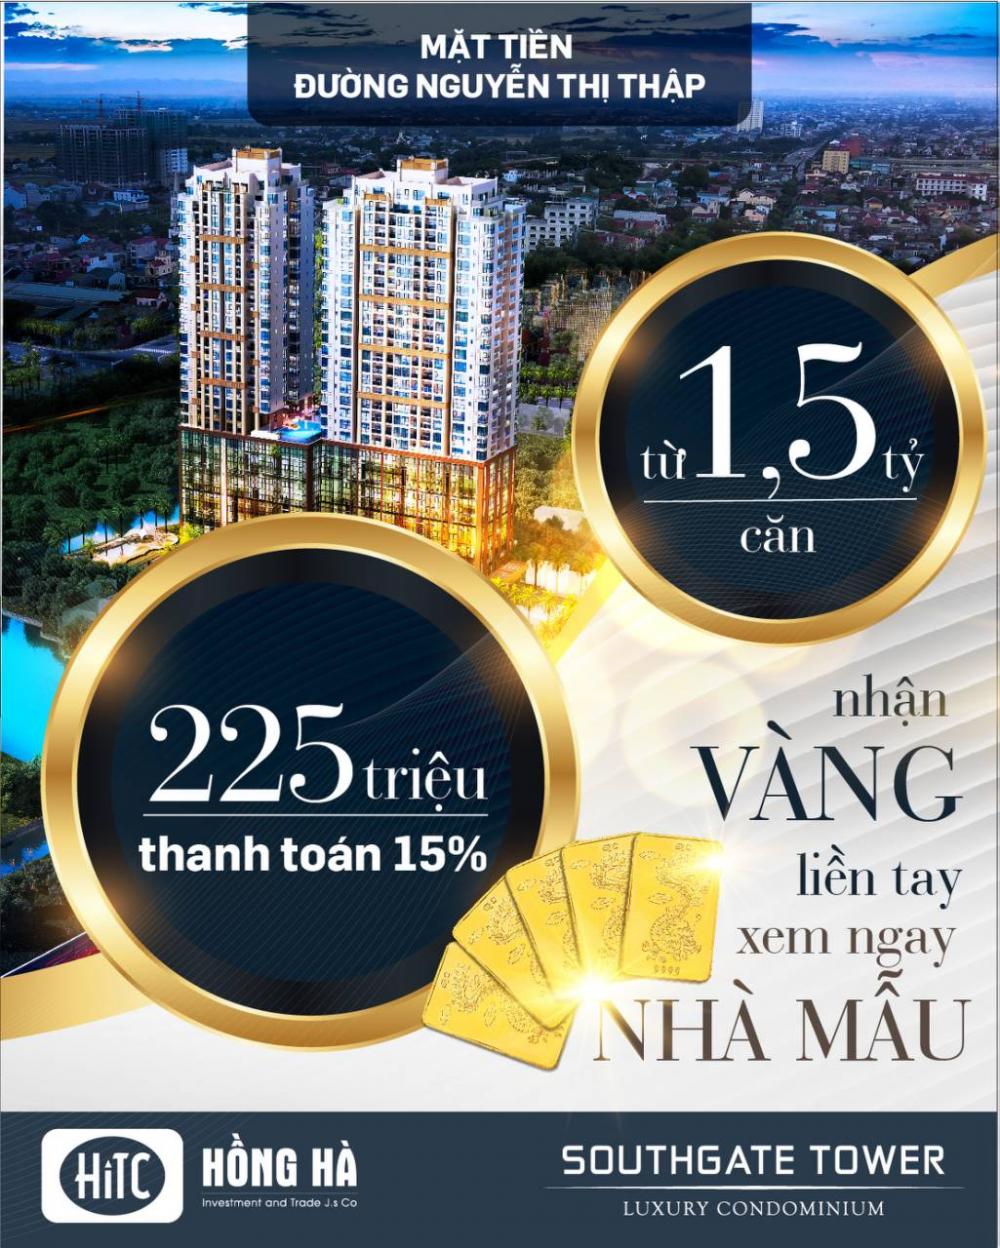 Căn hộ office-tel South Gate Tower chỉ 1.5 tỷ, MT Nguyễn Thị Thập, Quận 7 - Tặng 1 chỉ vàng - 0911386600